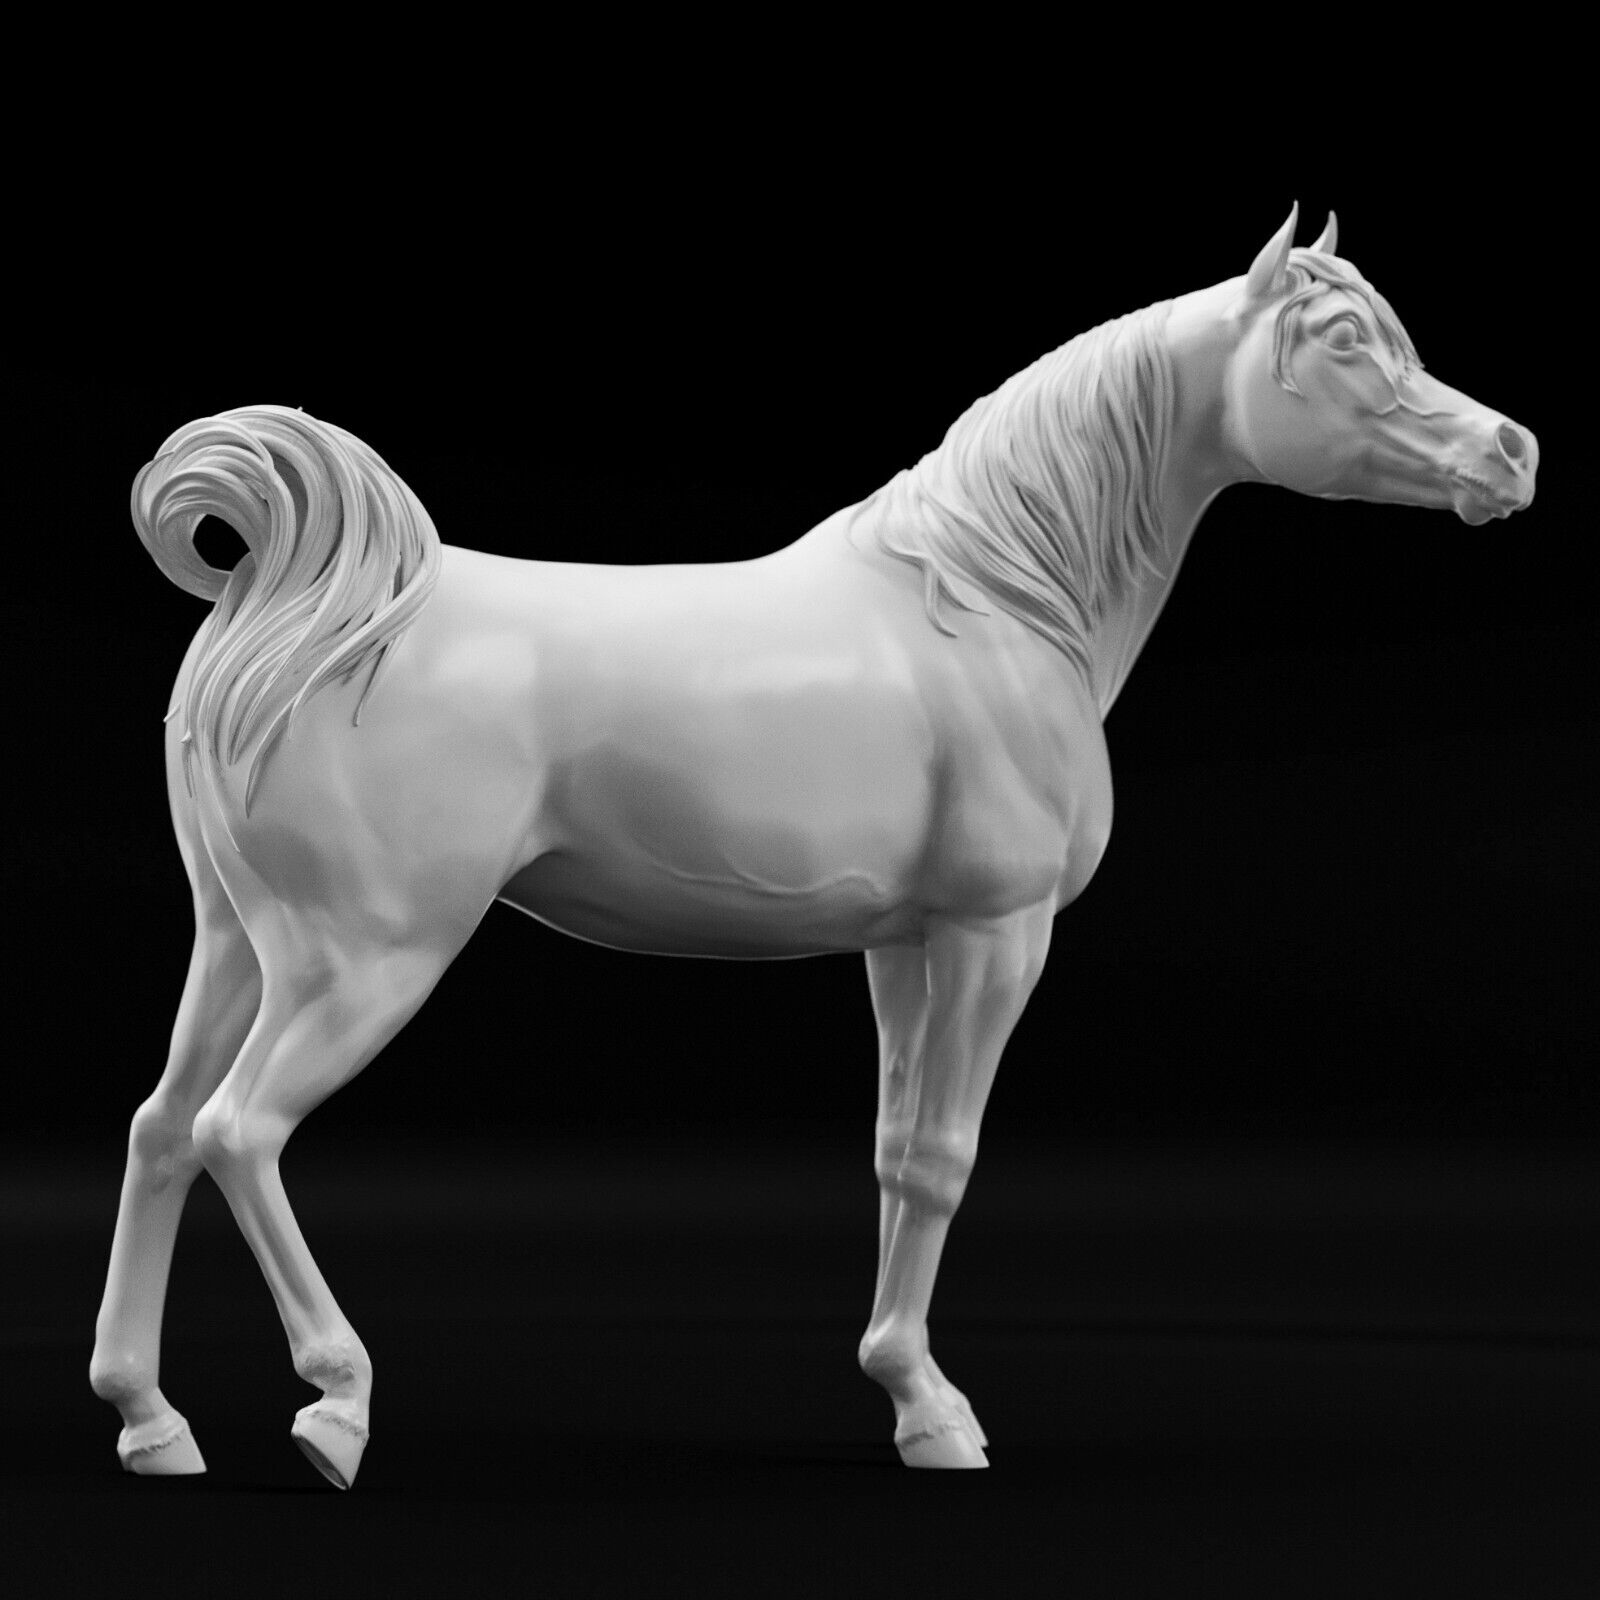 Breyer 1/9 Traditional Model Horse Arabian Stallion White Resin Ready To Paint